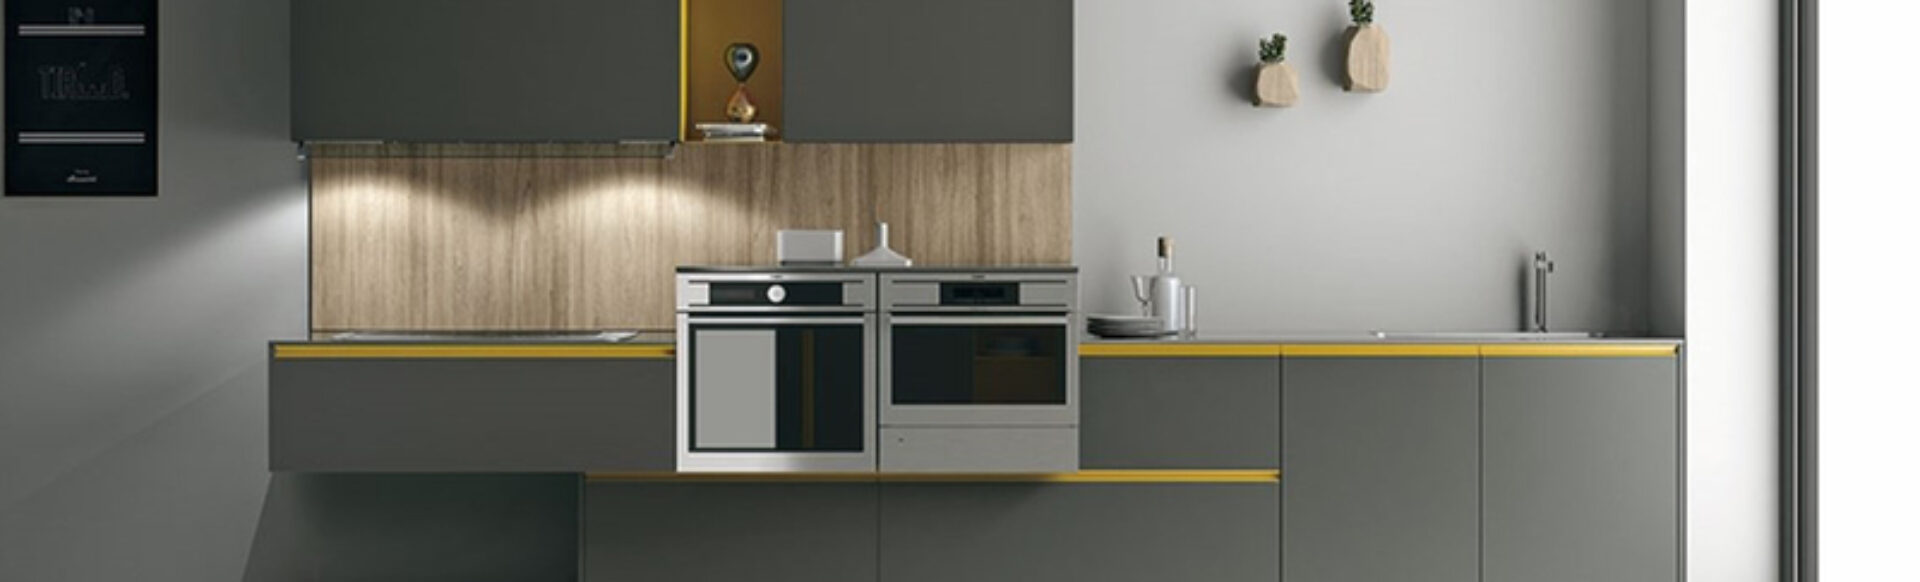 8-ambientes-cocinas-modernas-2021